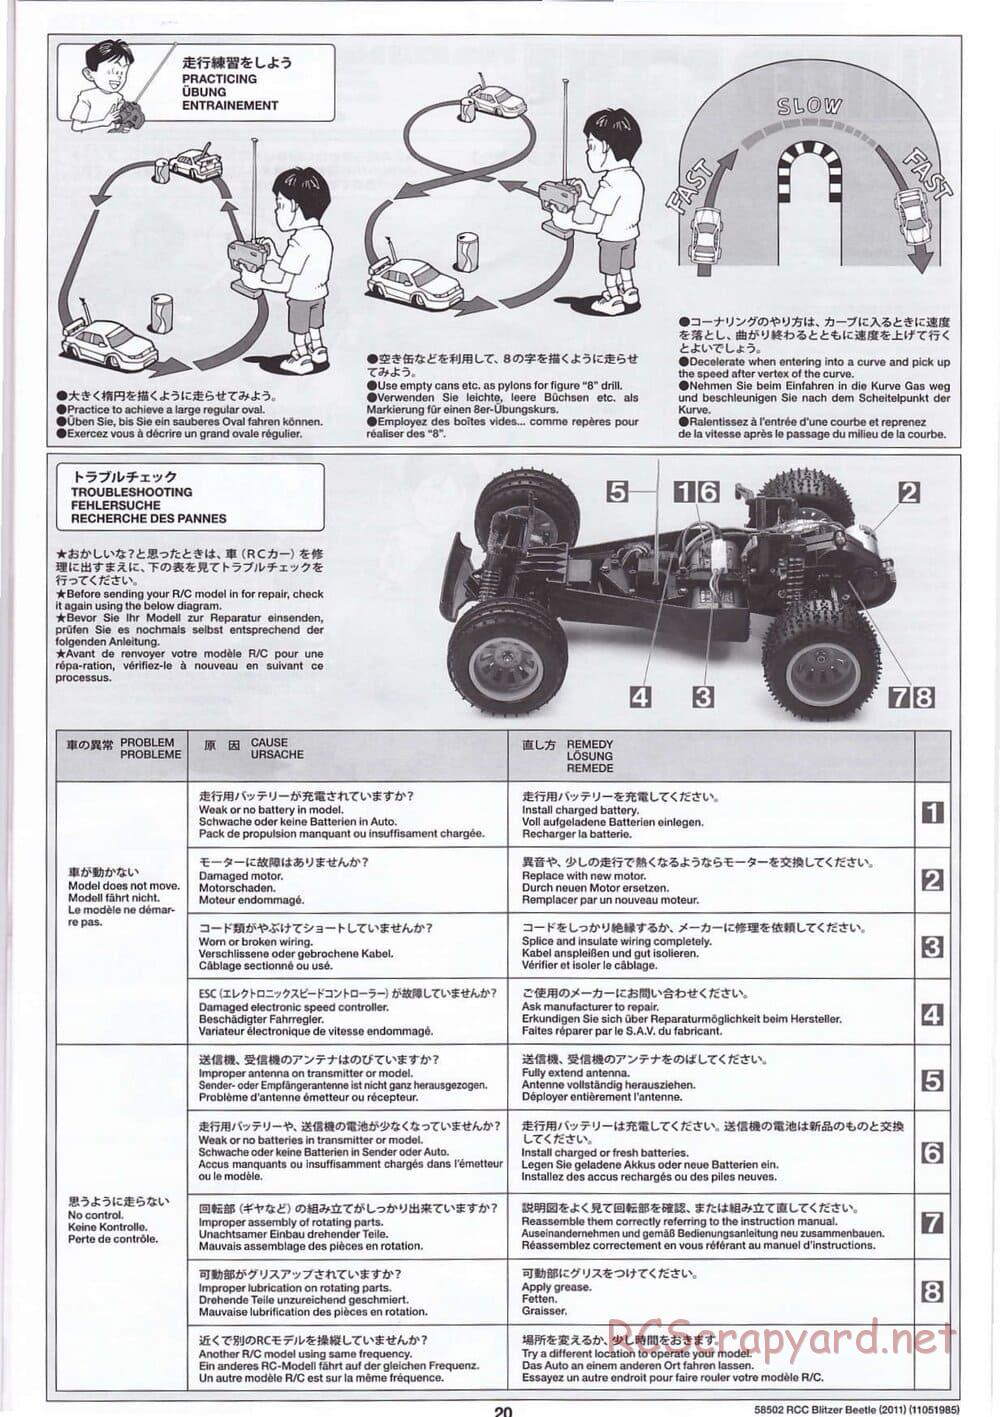 Tamiya - Blitzer Beetle 2011 - FAL Chassis - Manual - Page 20